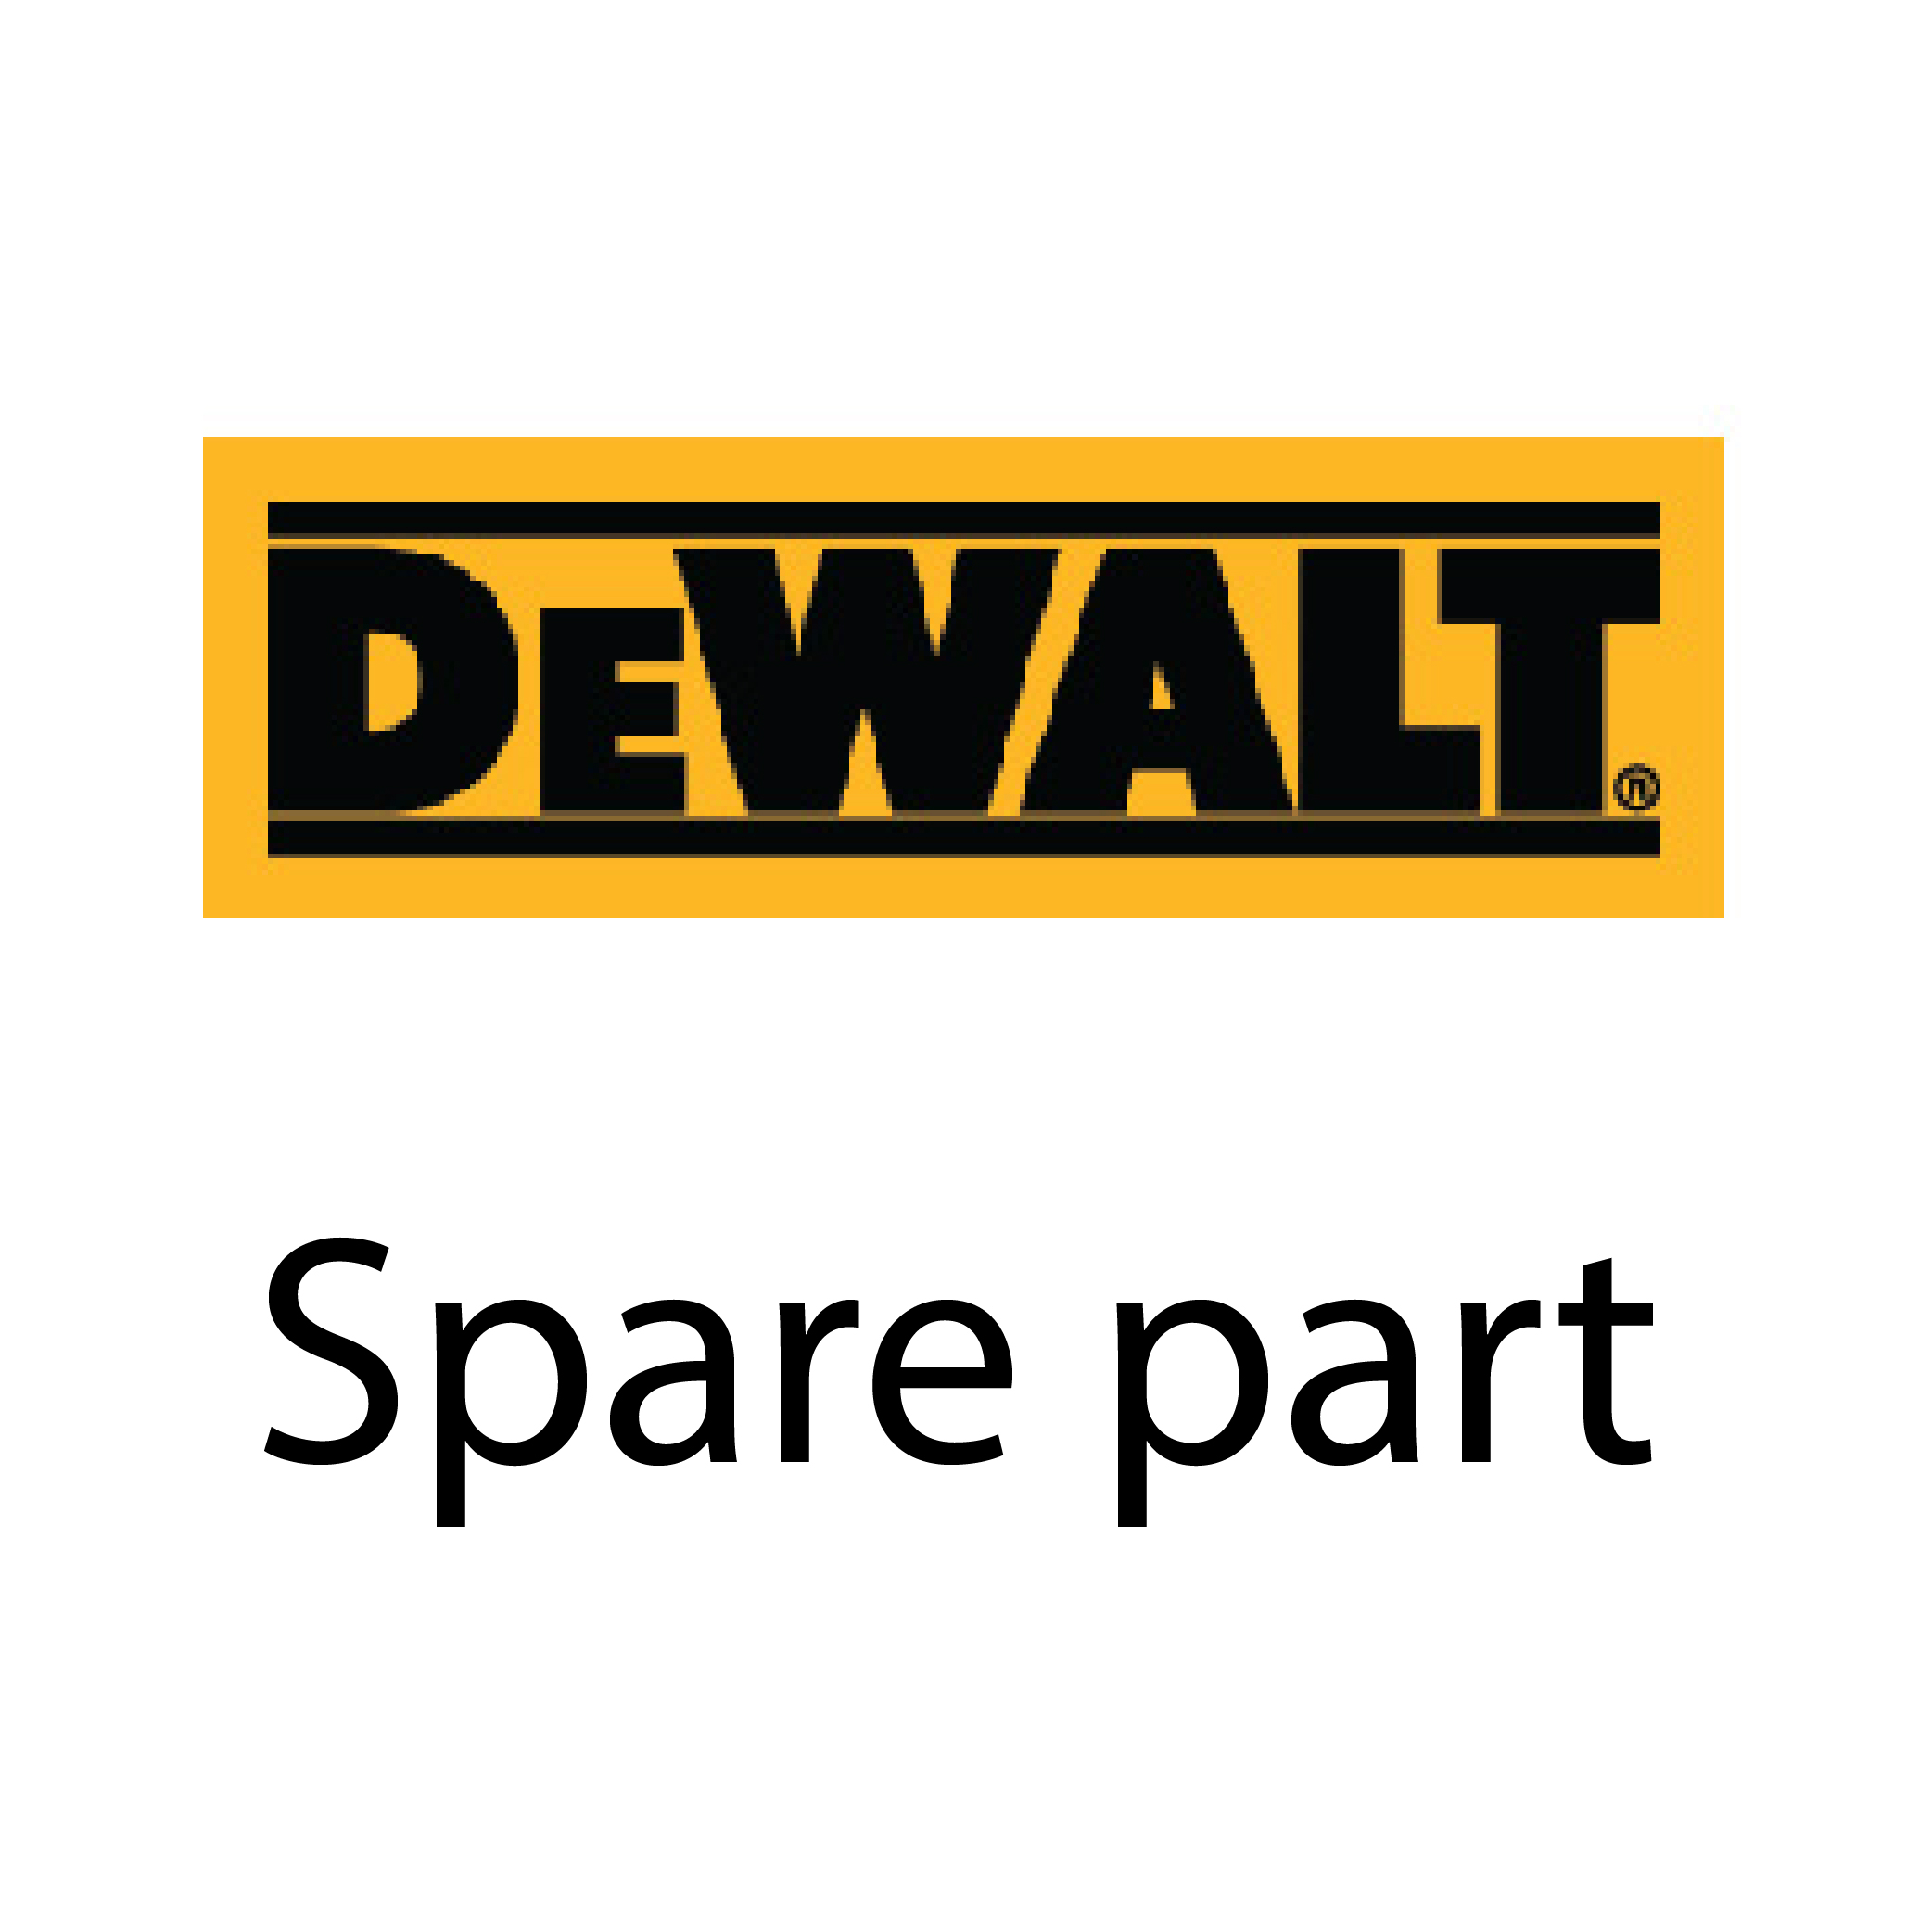 SKI - สกี จำหน่ายสินค้าหลากหลาย และคุณภาพดี | DEWALT ฟิลคอยเครื่องขัด 7นิ้ว DW846